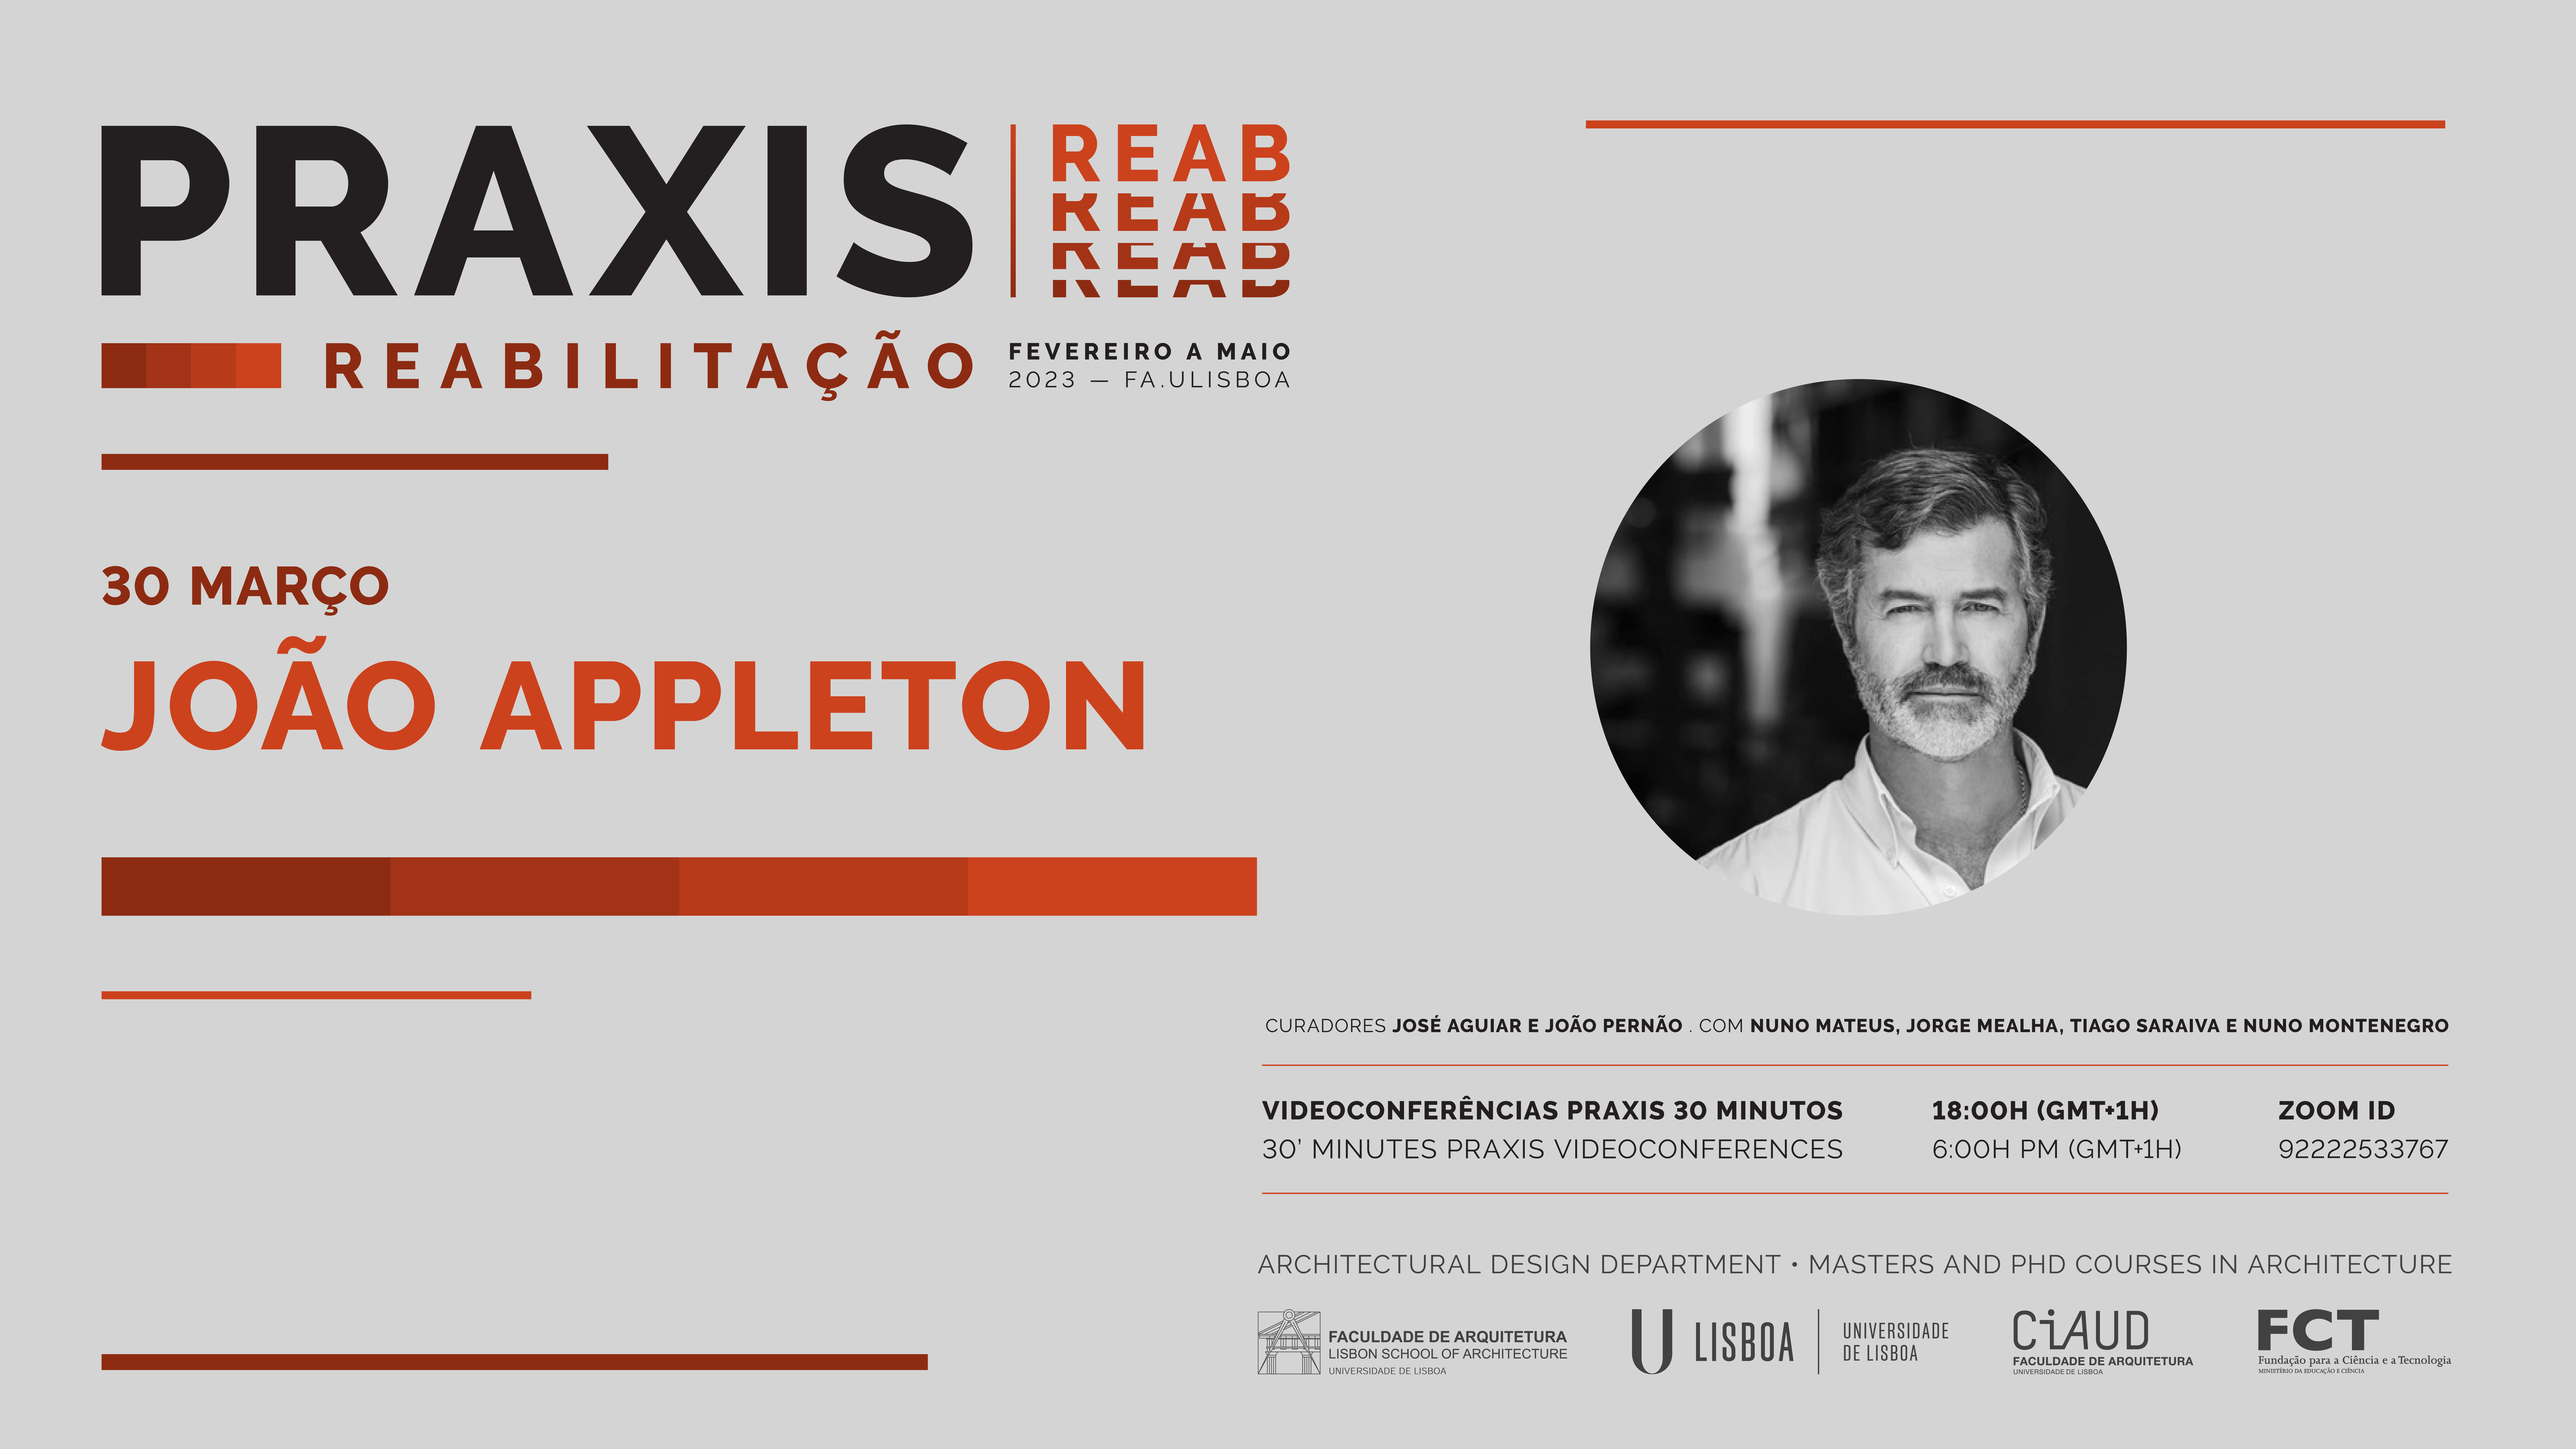 Ciclo de Conferências Praxis REAB com João Appleton (Appleton & Domingos, arquitectos), dia 30 de março, 18h online